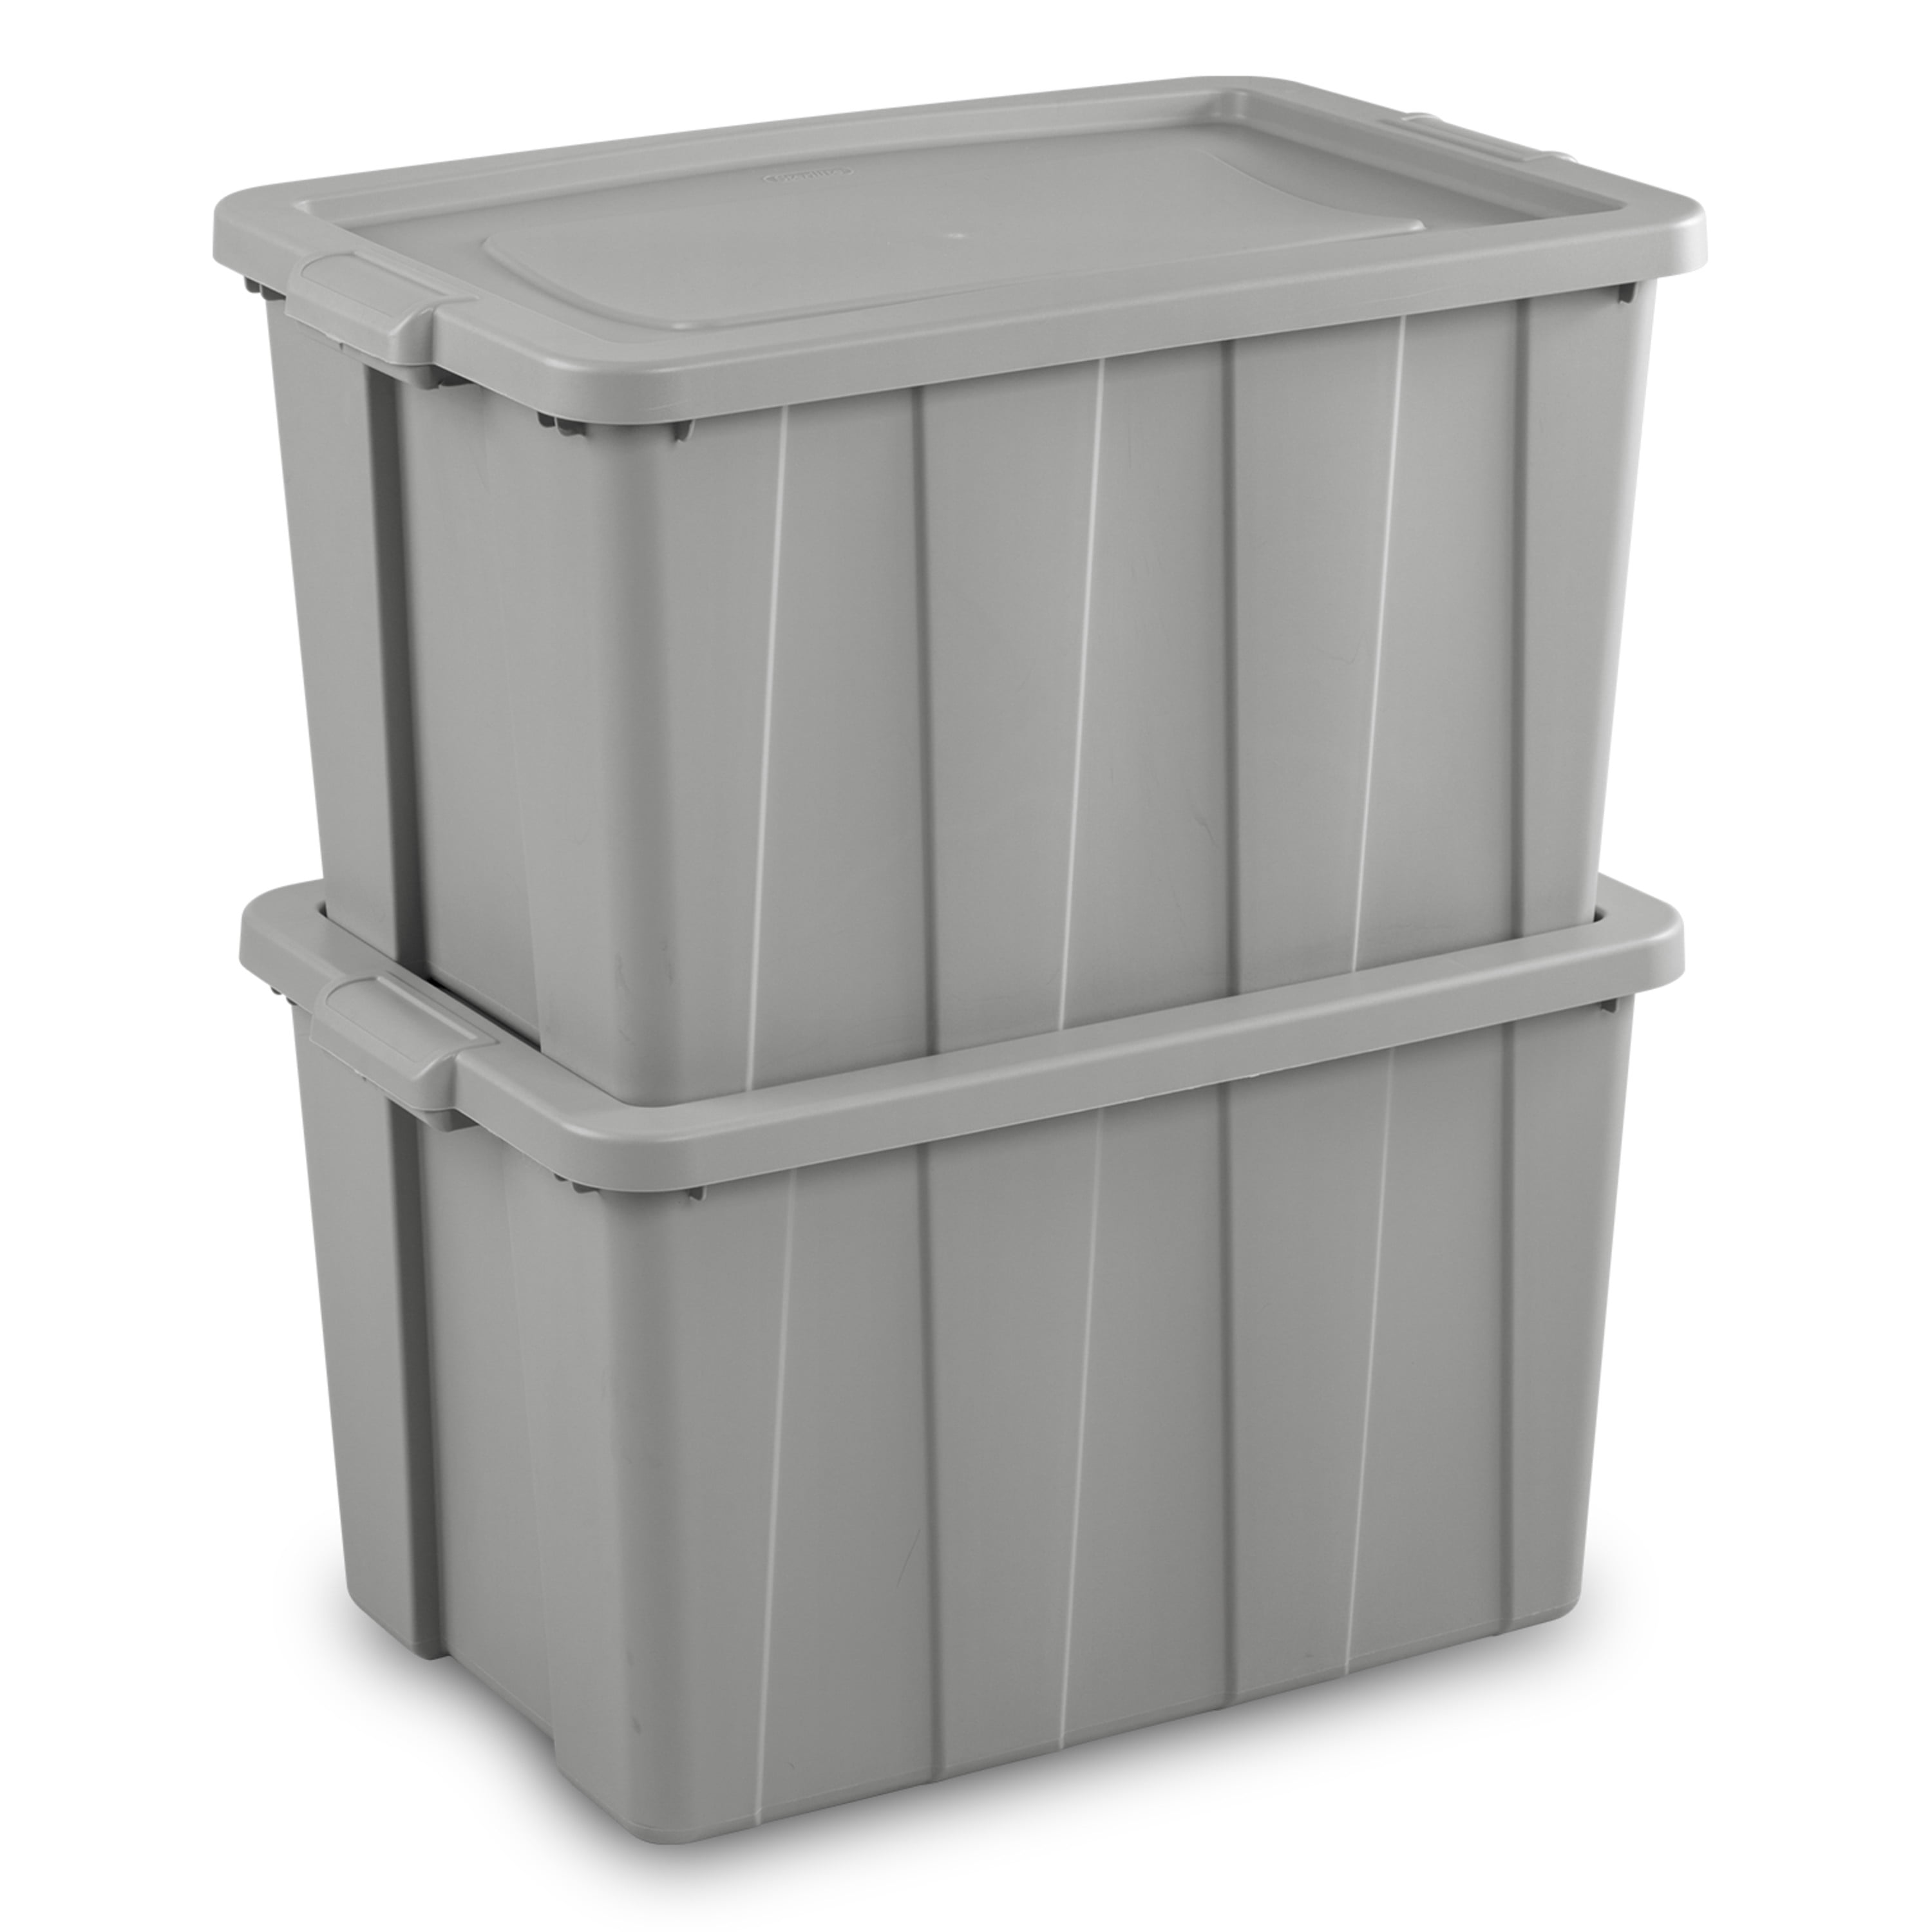 Sterilite Tuff1 30 Gallon Plastic Storage Tote Container Bin w/ Lid (4 Pack)